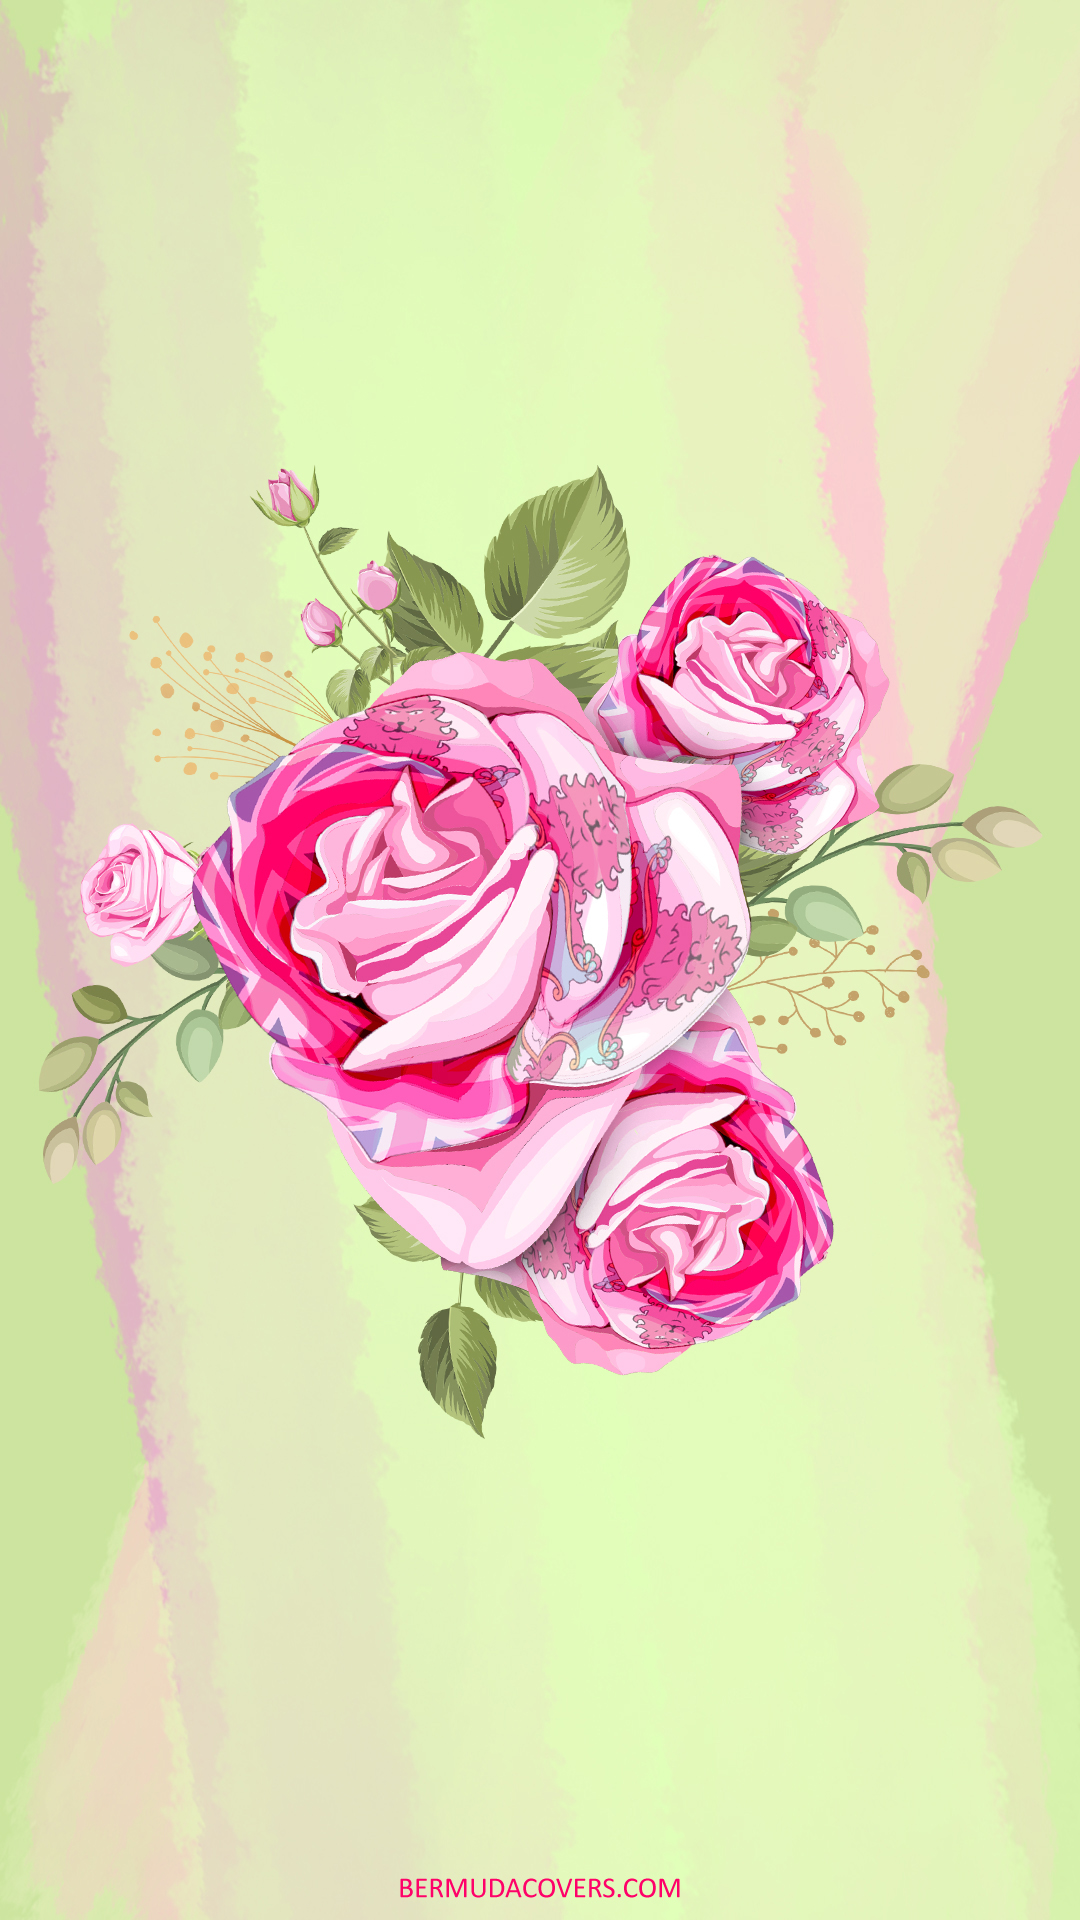 Roses-With-Bermuda-Flag-Drawing-social-media-phone-wallpaper-437437483-1